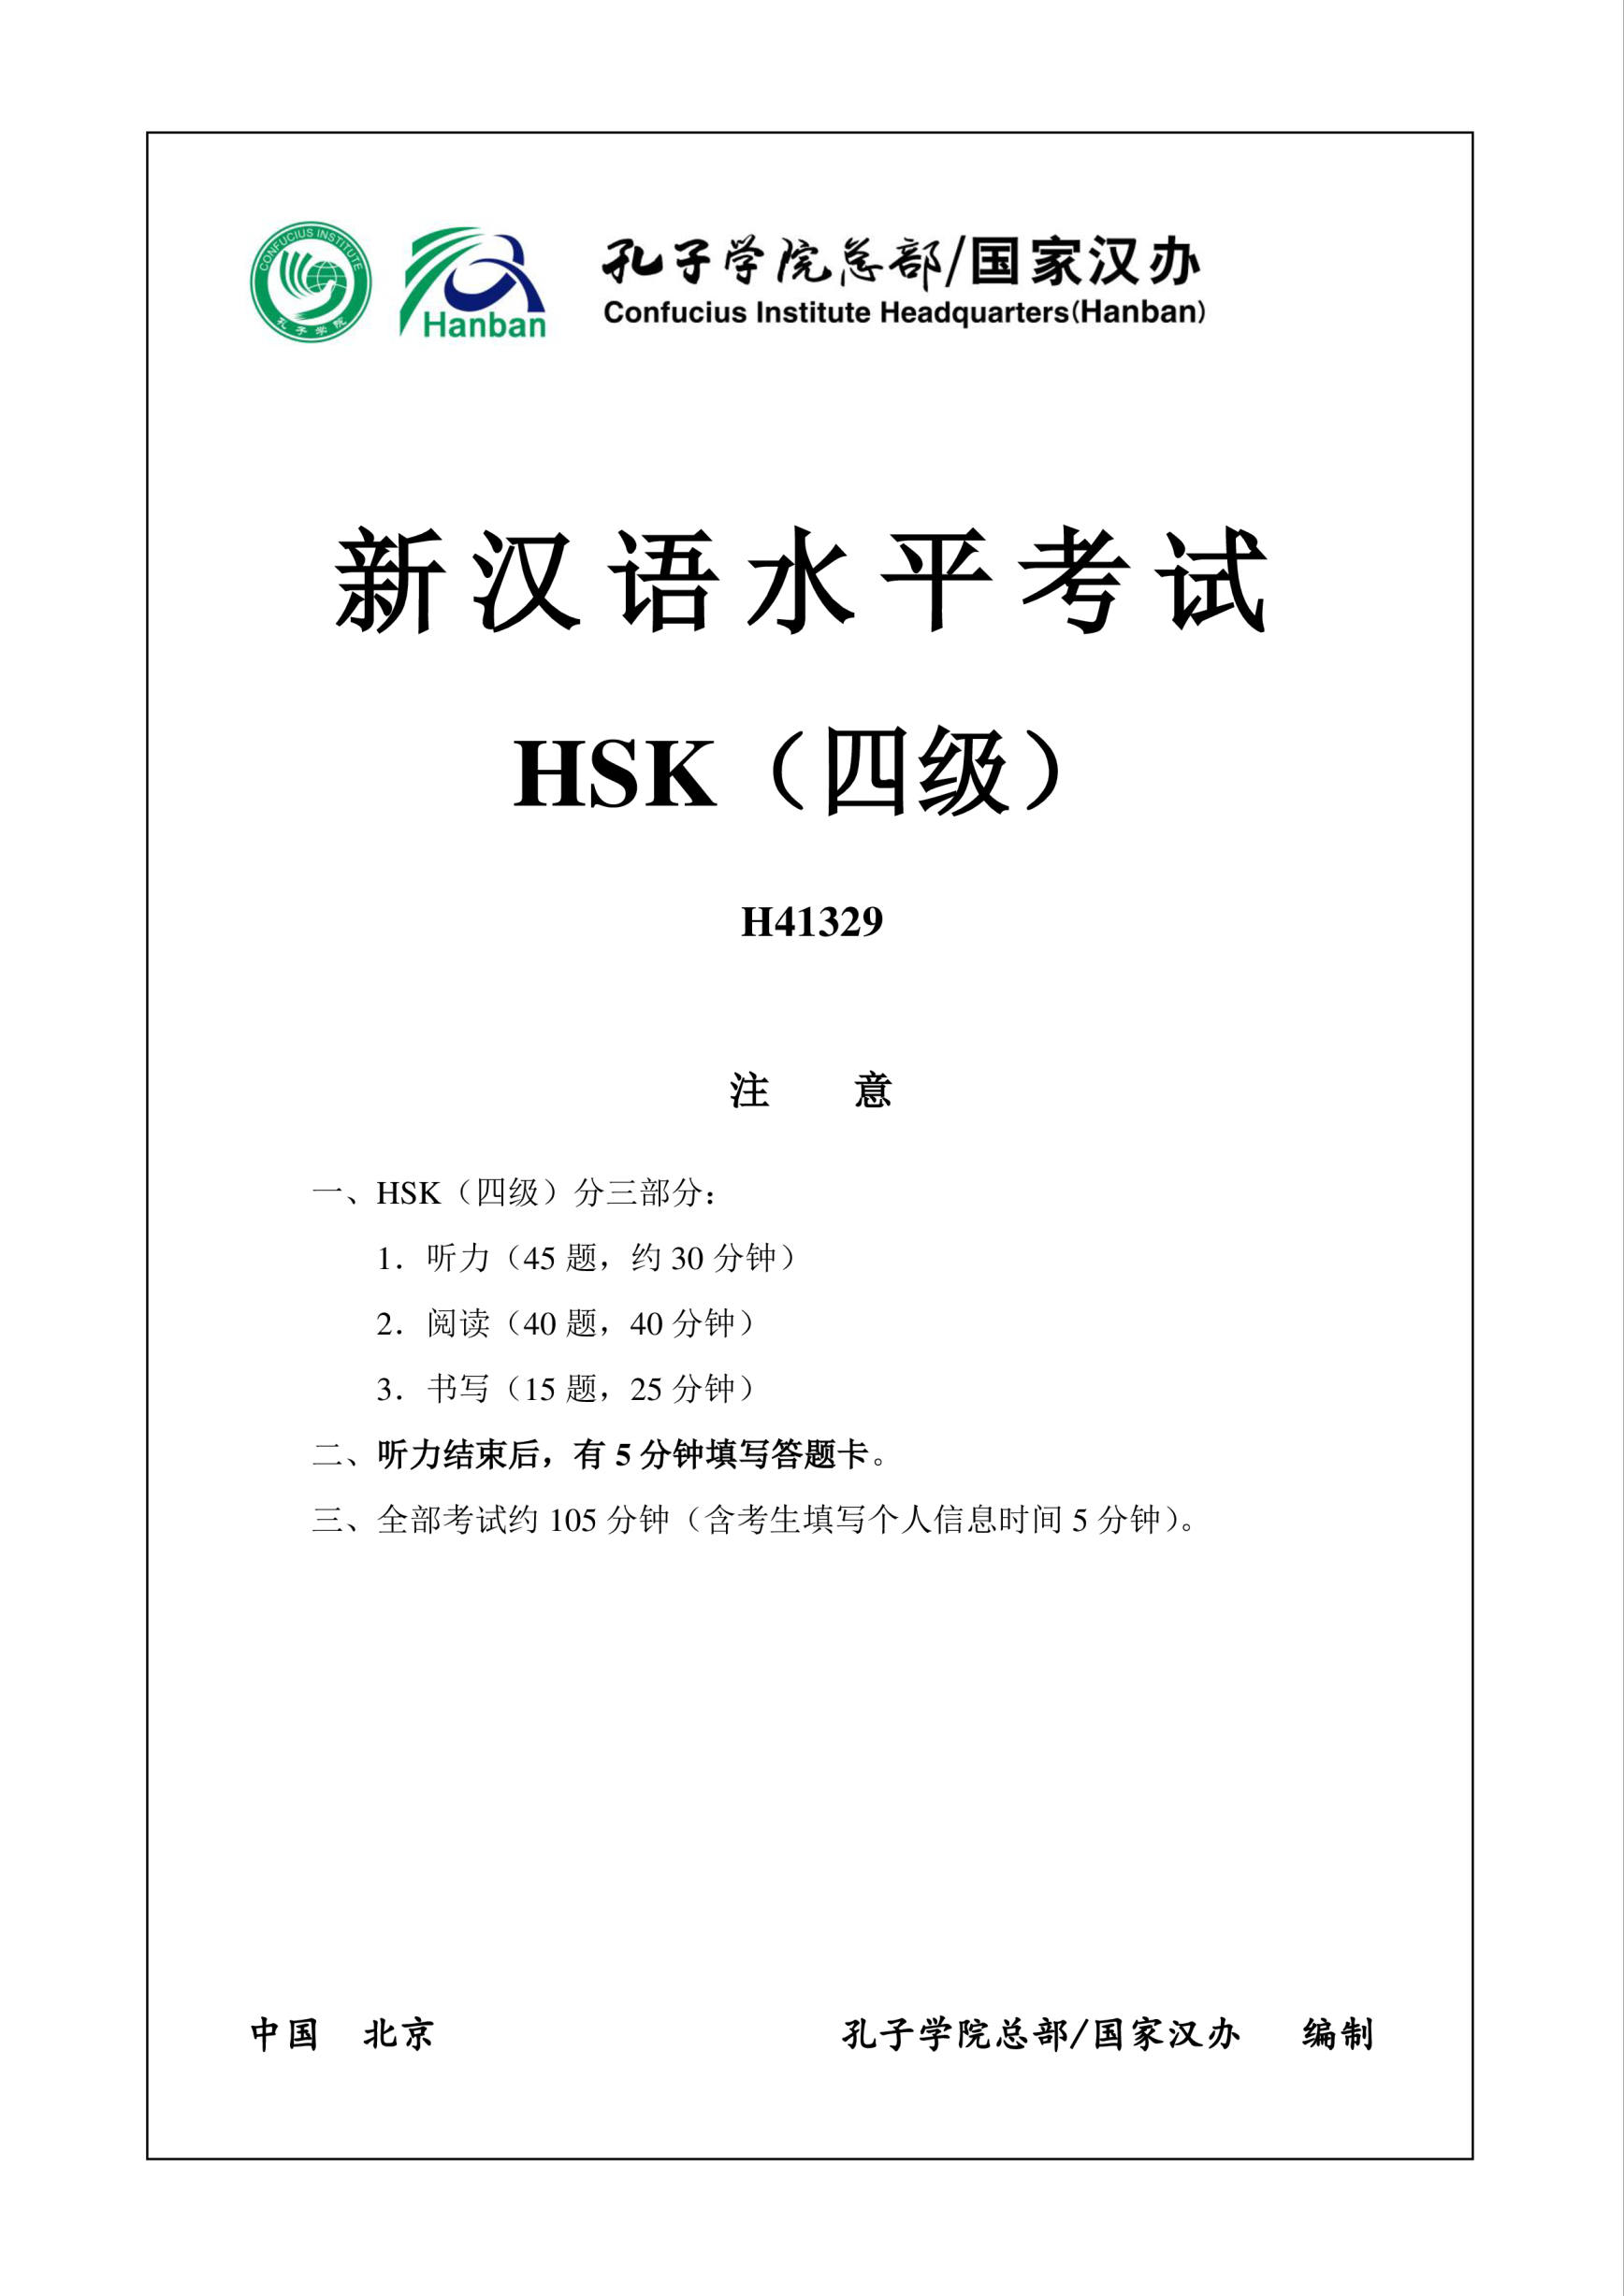 Vorschaubild der VorlageHSK4 Chinese Exam incl Audio and Answers # H41329